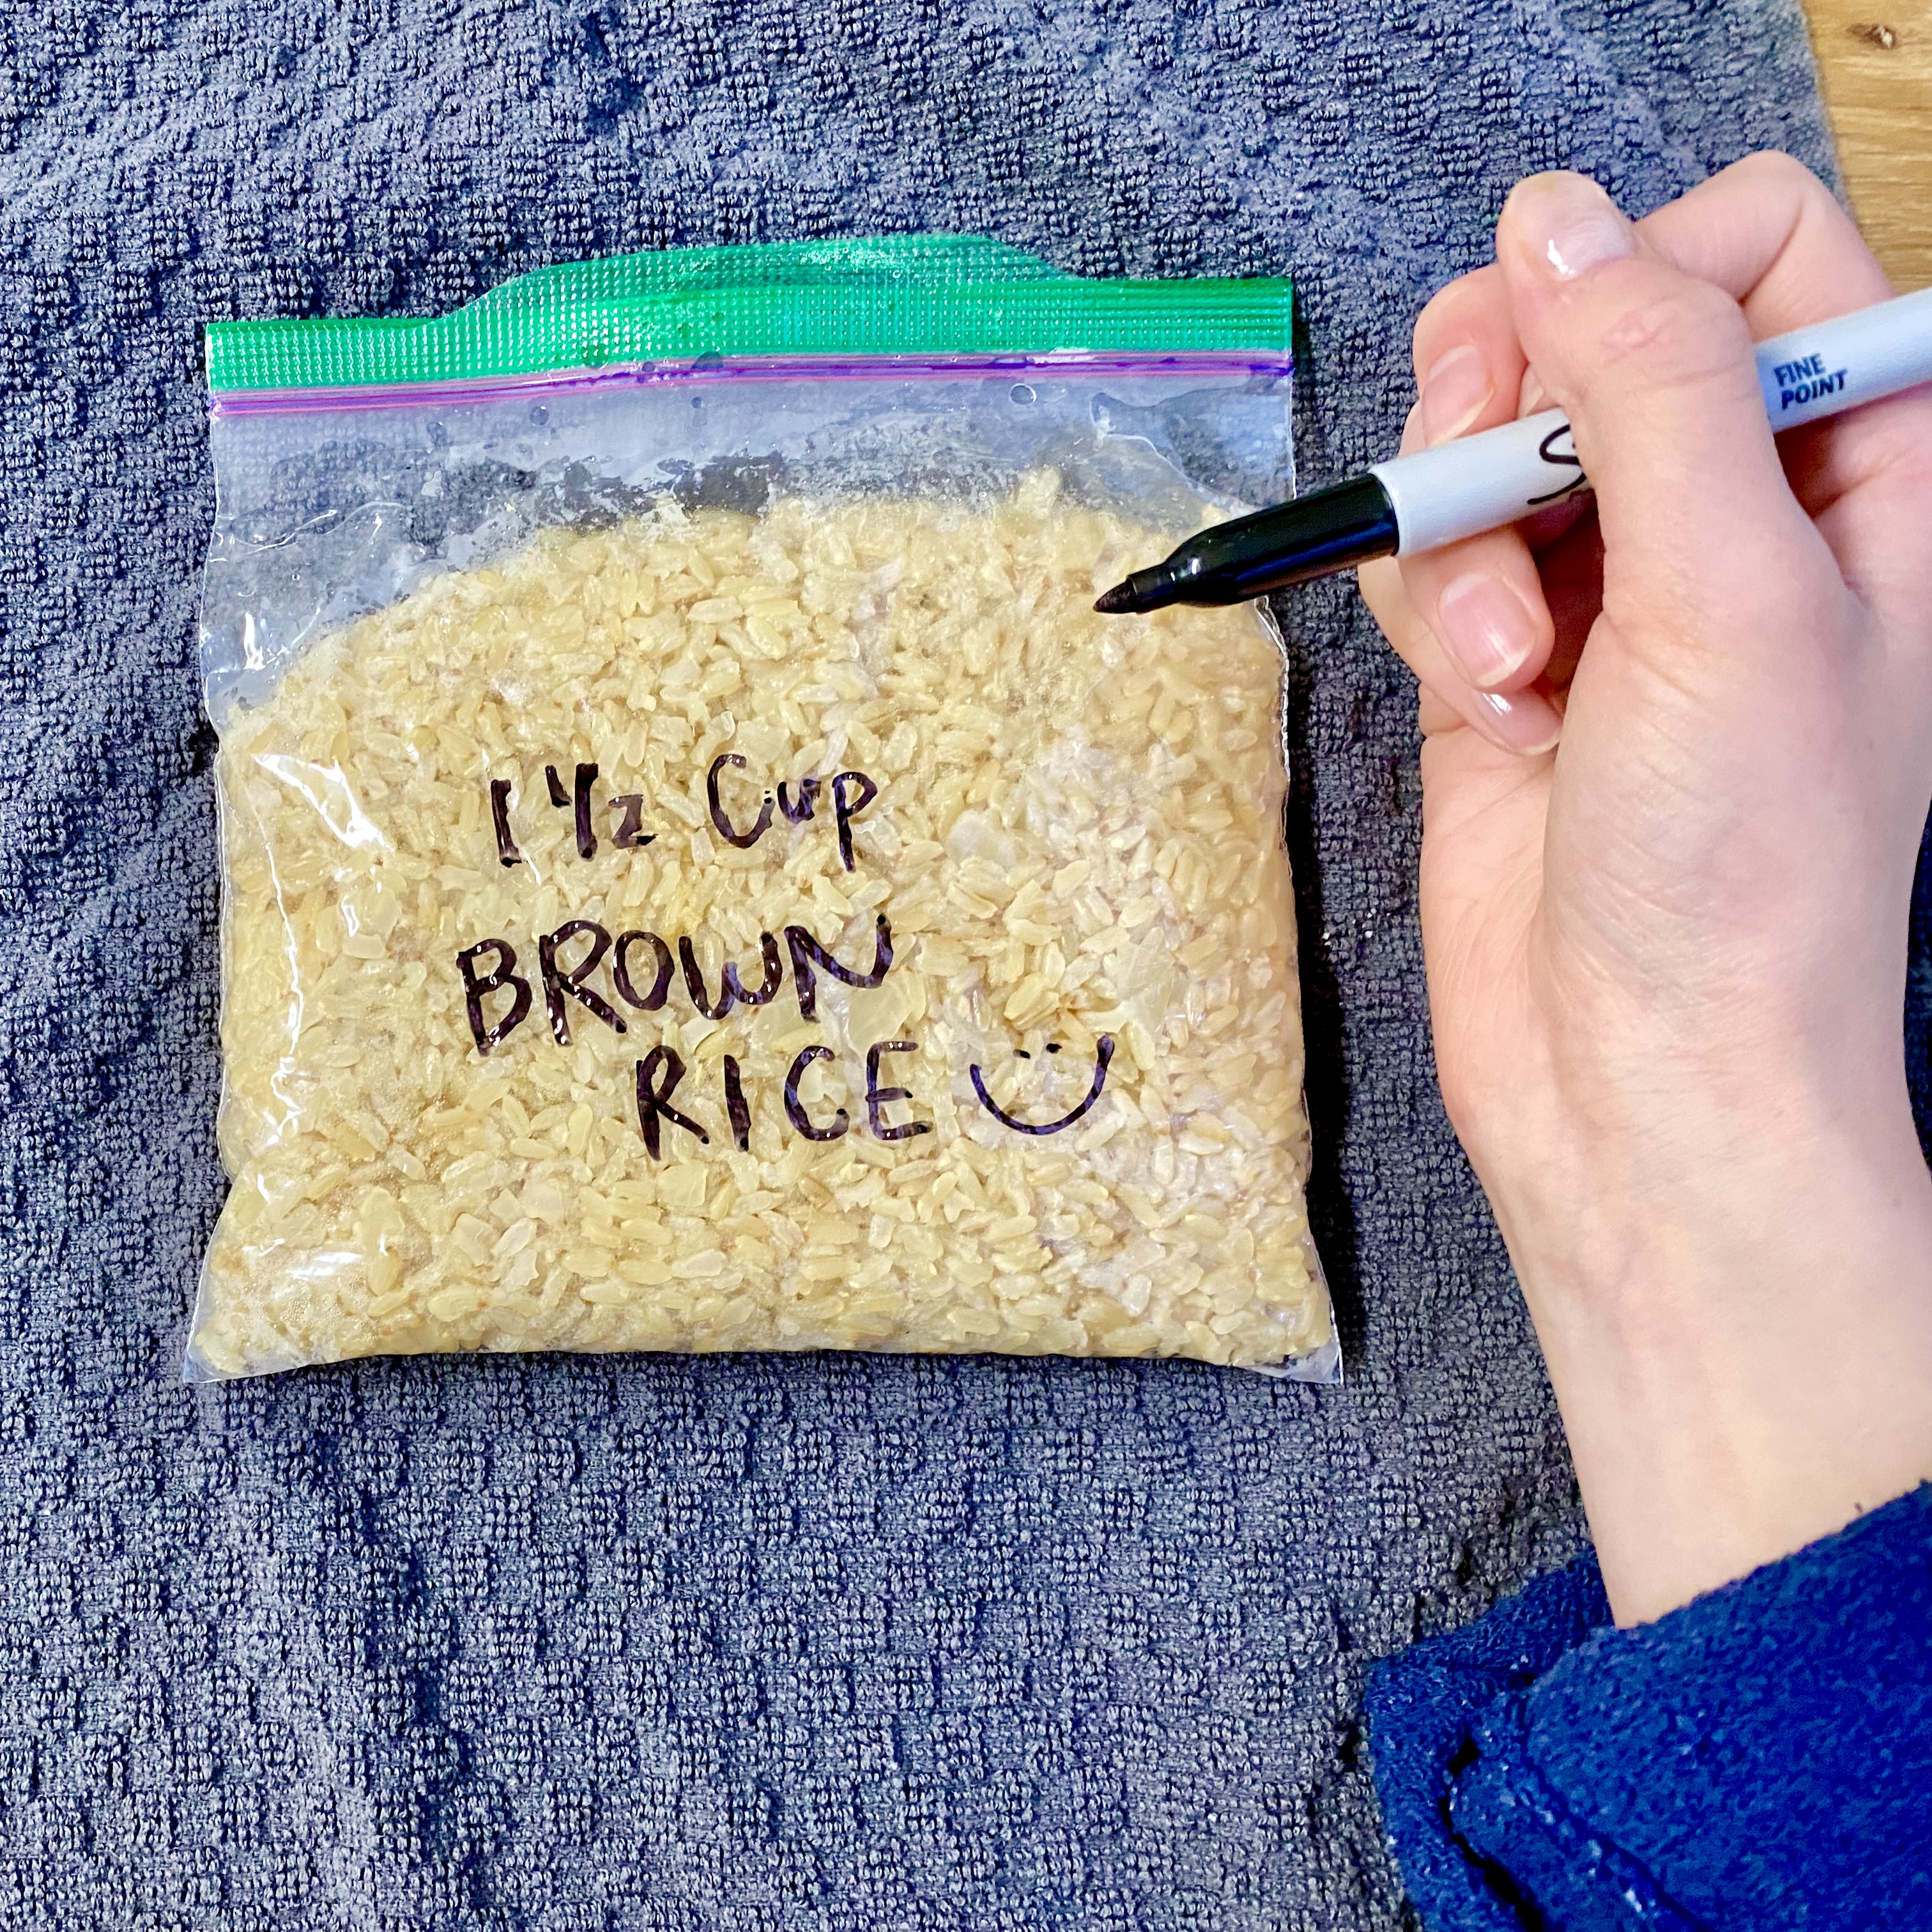 Ziplock bag of brown rice